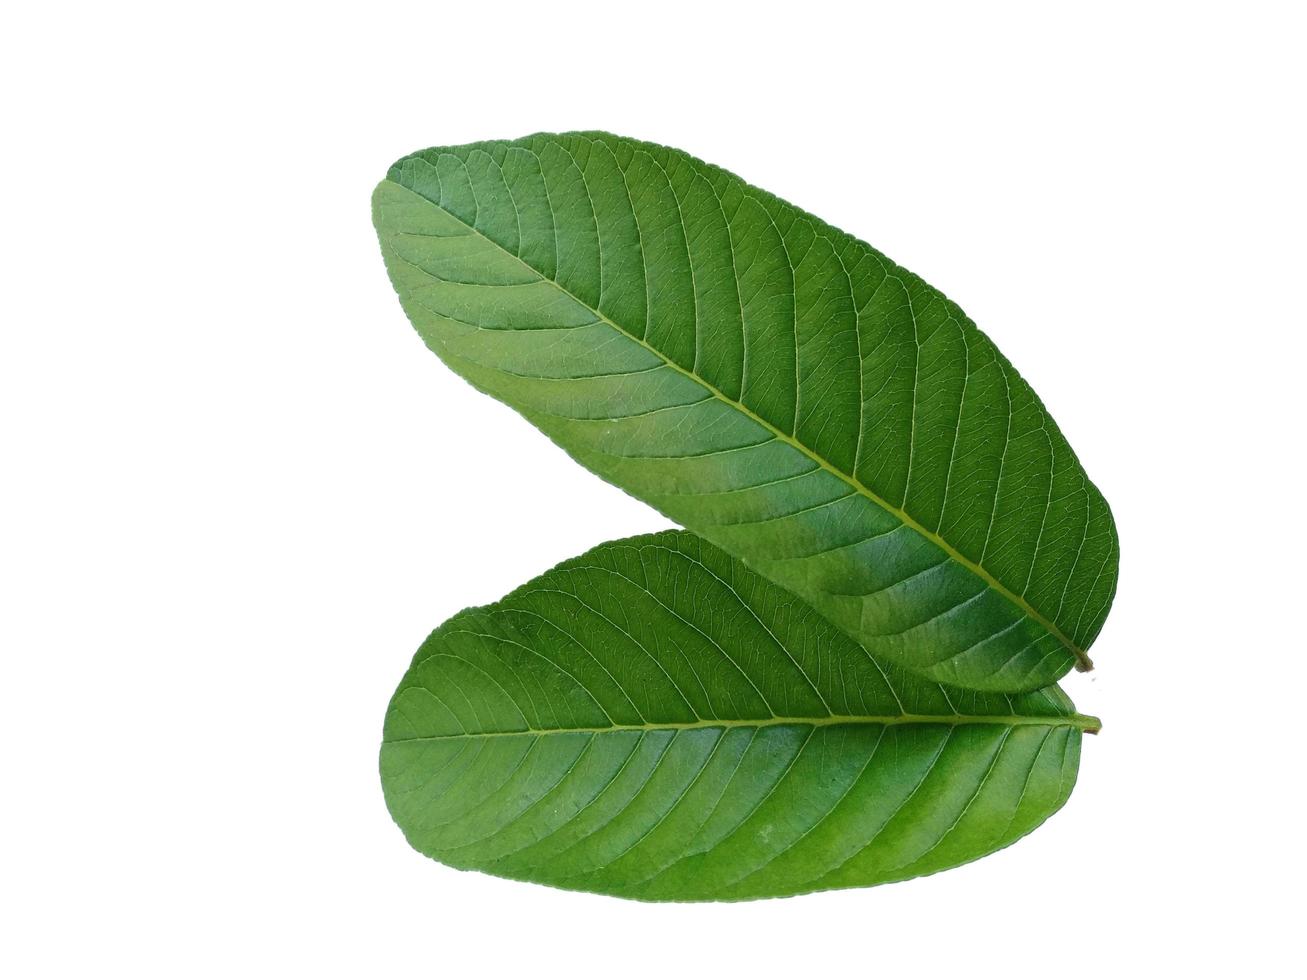 Feuille de psidium guajava ou feuilles de goyave isolées sur fond blanc photo